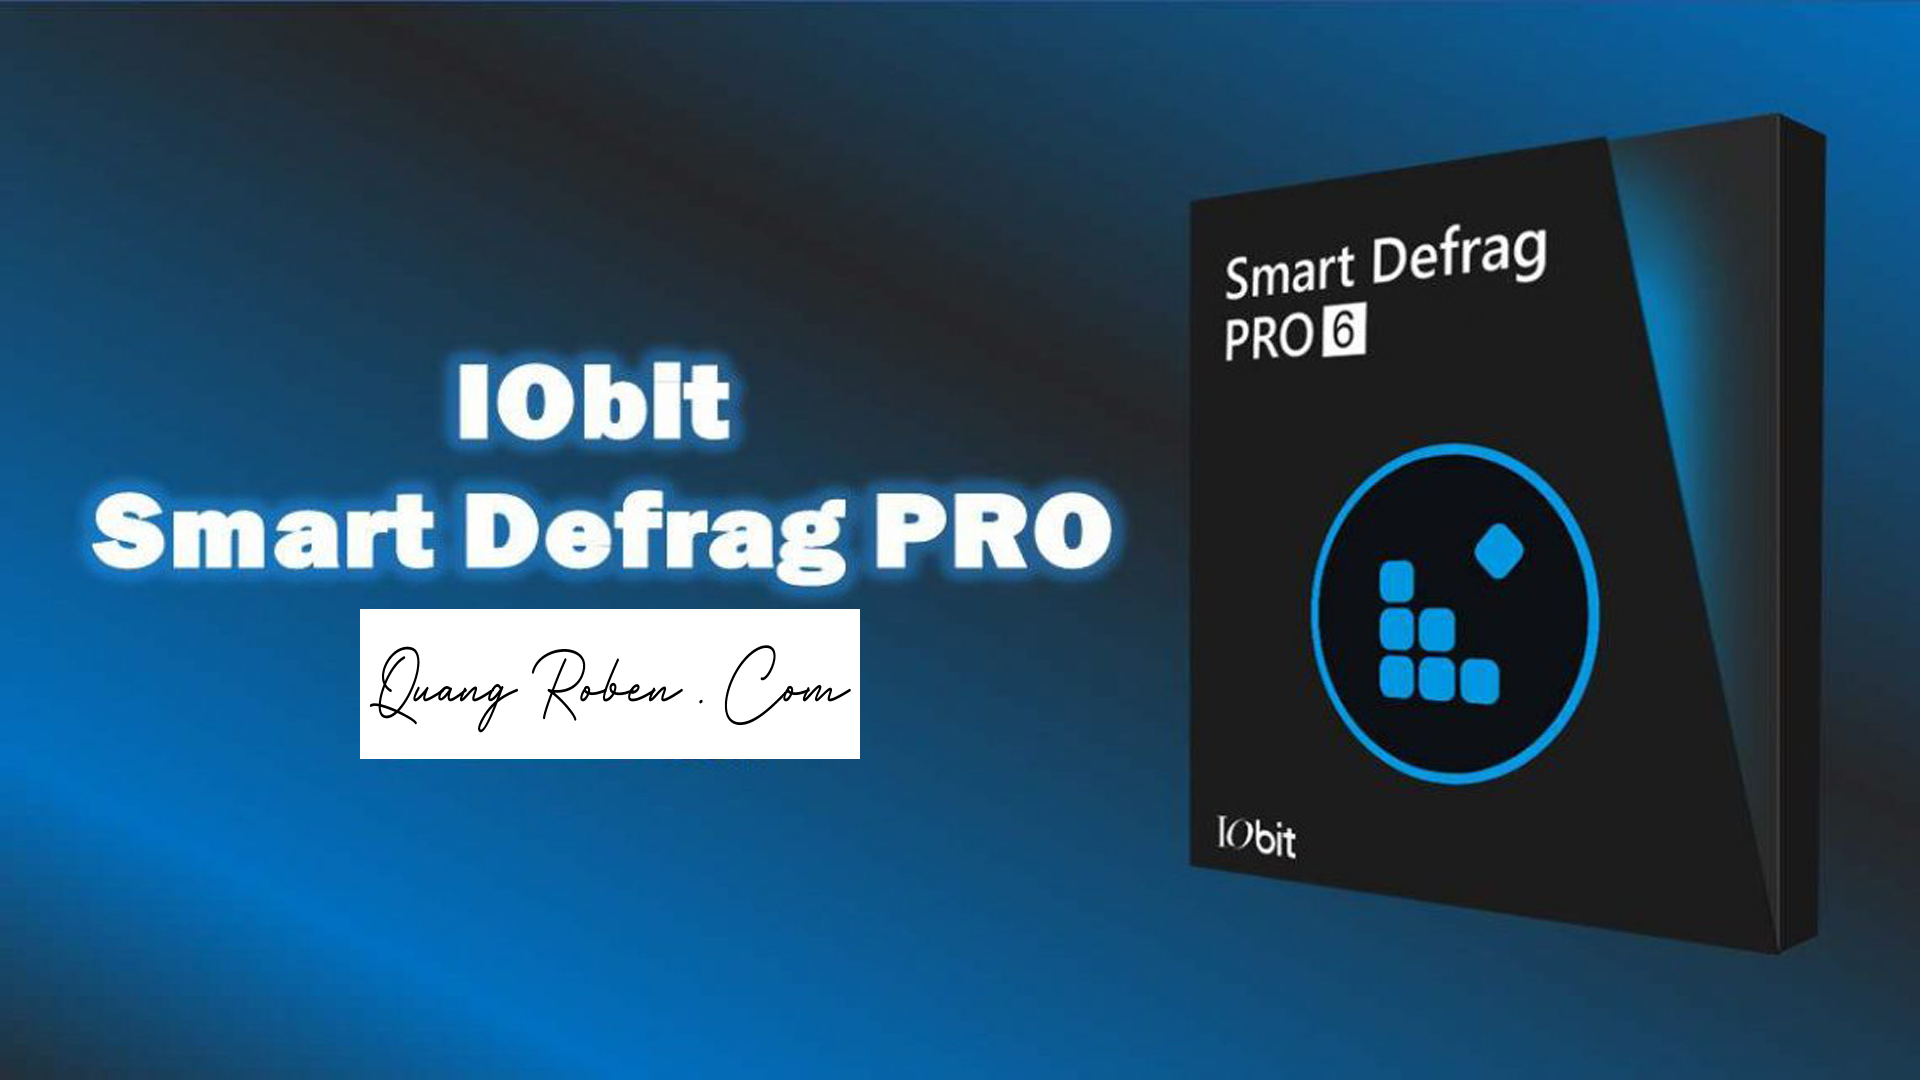 iobit smart defrag pro 5.5.1 2017